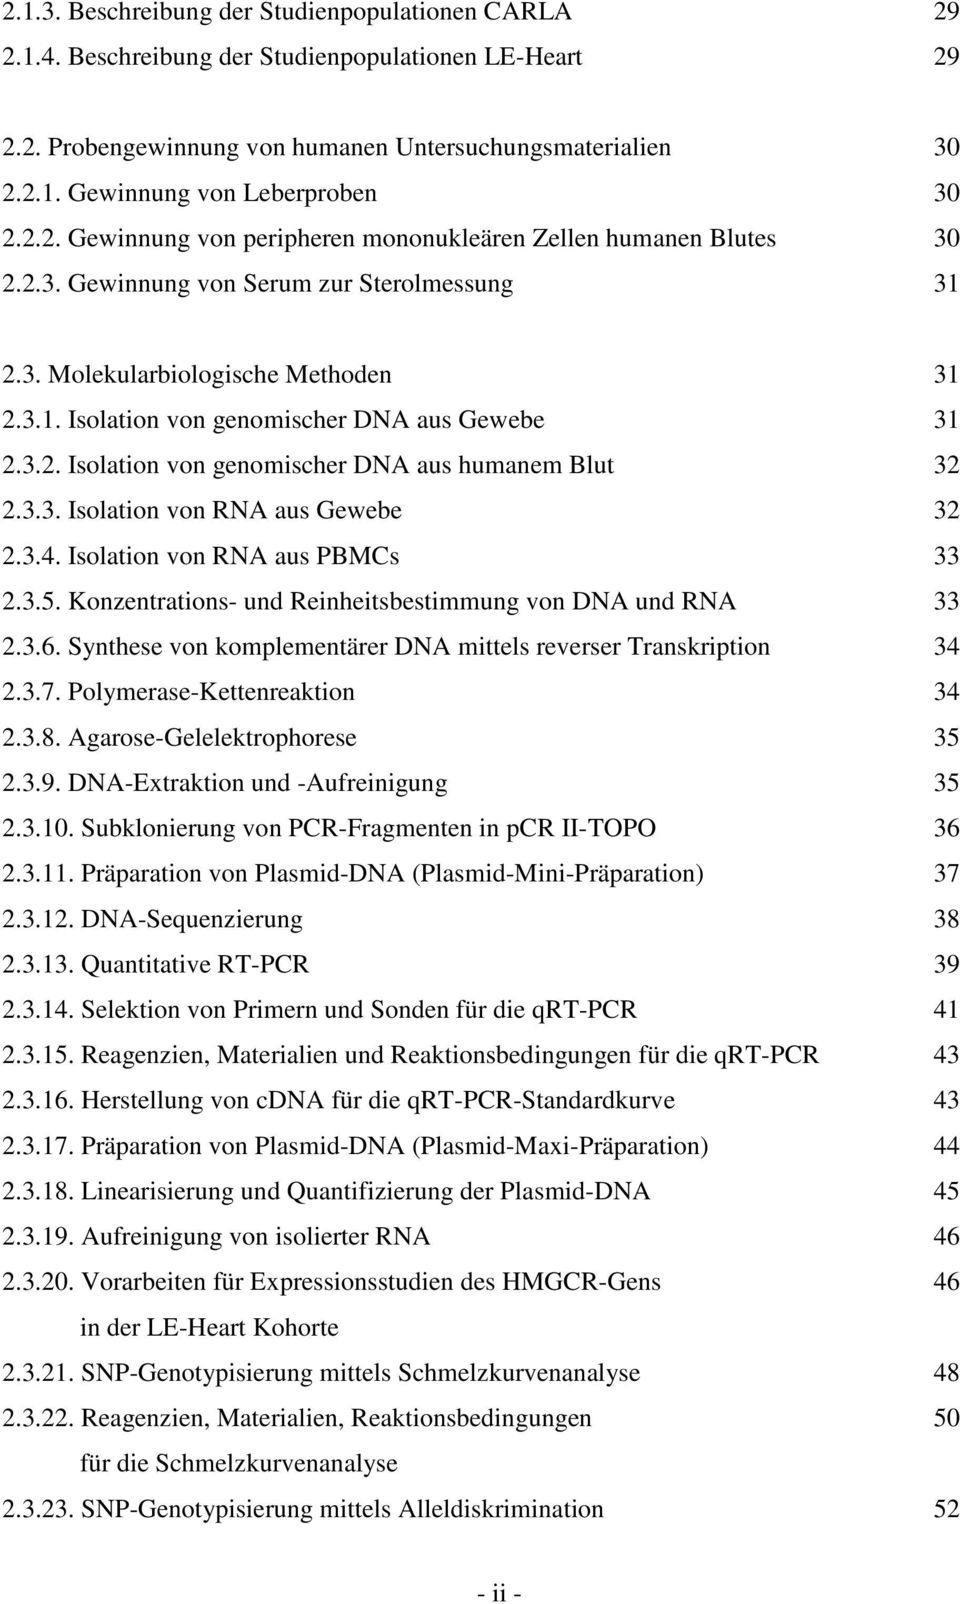 3.2. Isolation von genomischer DNA aus humanem Blut 32 2.3.3. Isolation von RNA aus Gewebe 32 2.3.4. Isolation von RNA aus PBMCs 33 2.3.5. Konzentrations- und Reinheitsbestimmung von DNA und RNA 33 2.